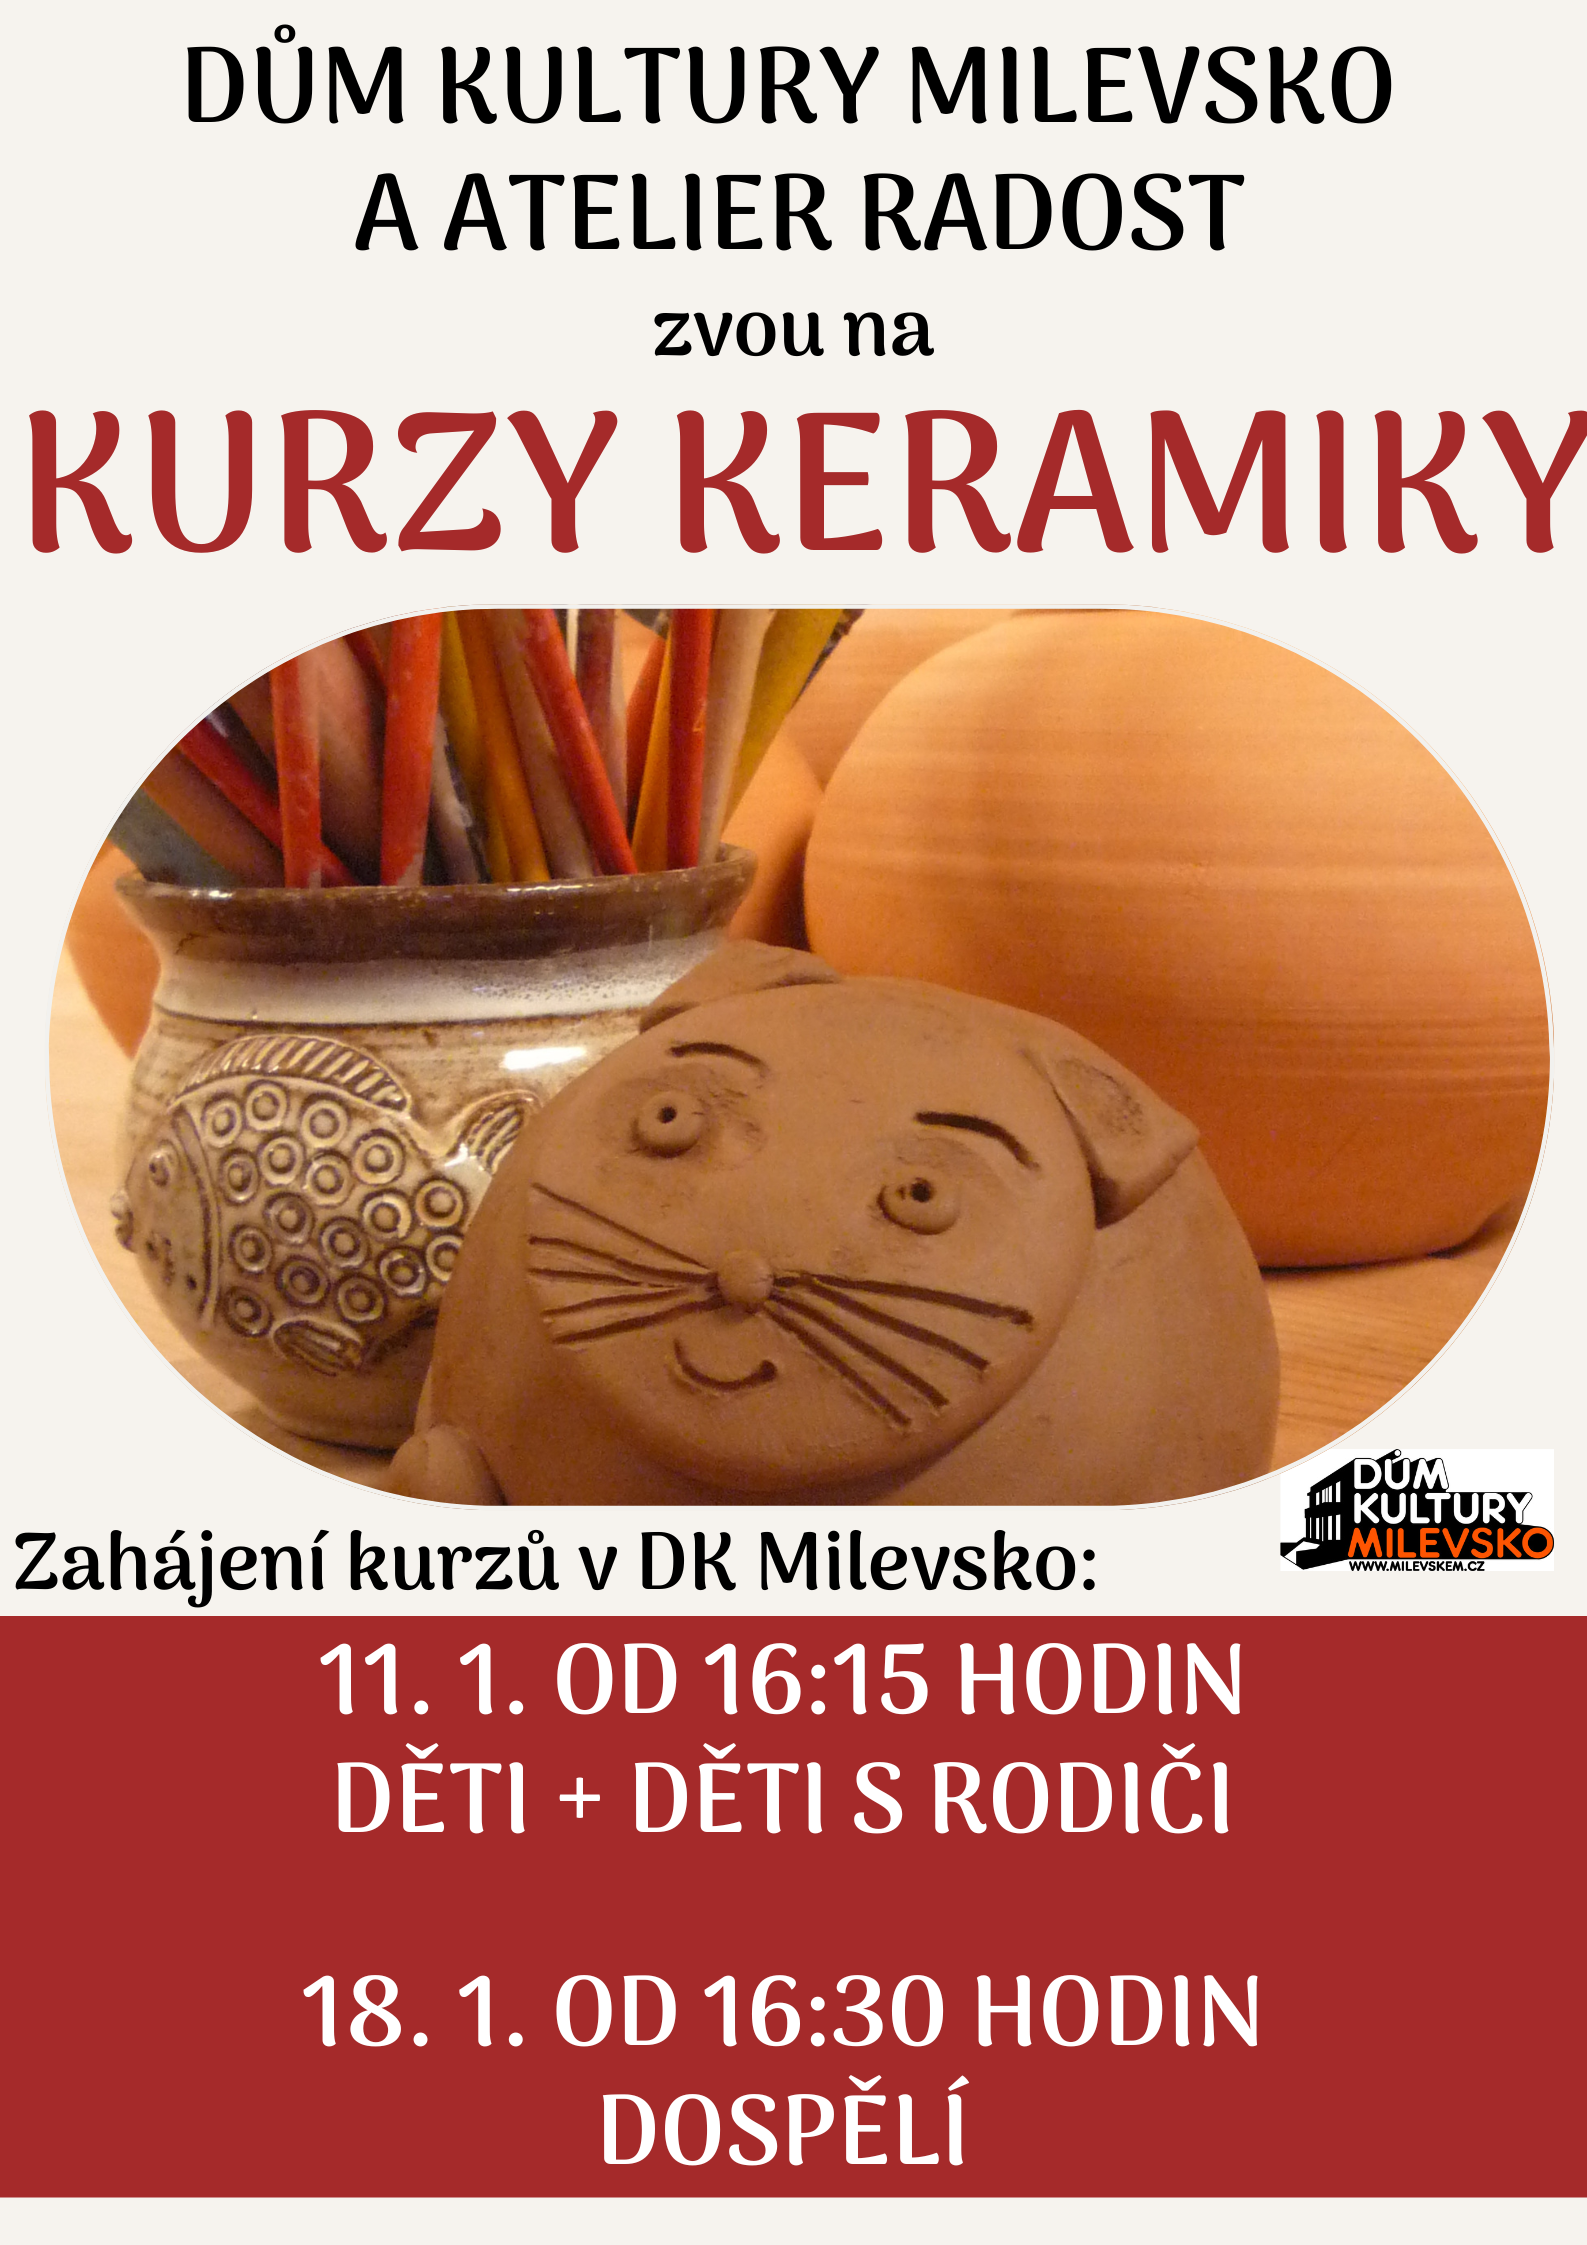 Plakát Kurz keramiky pro dospělé